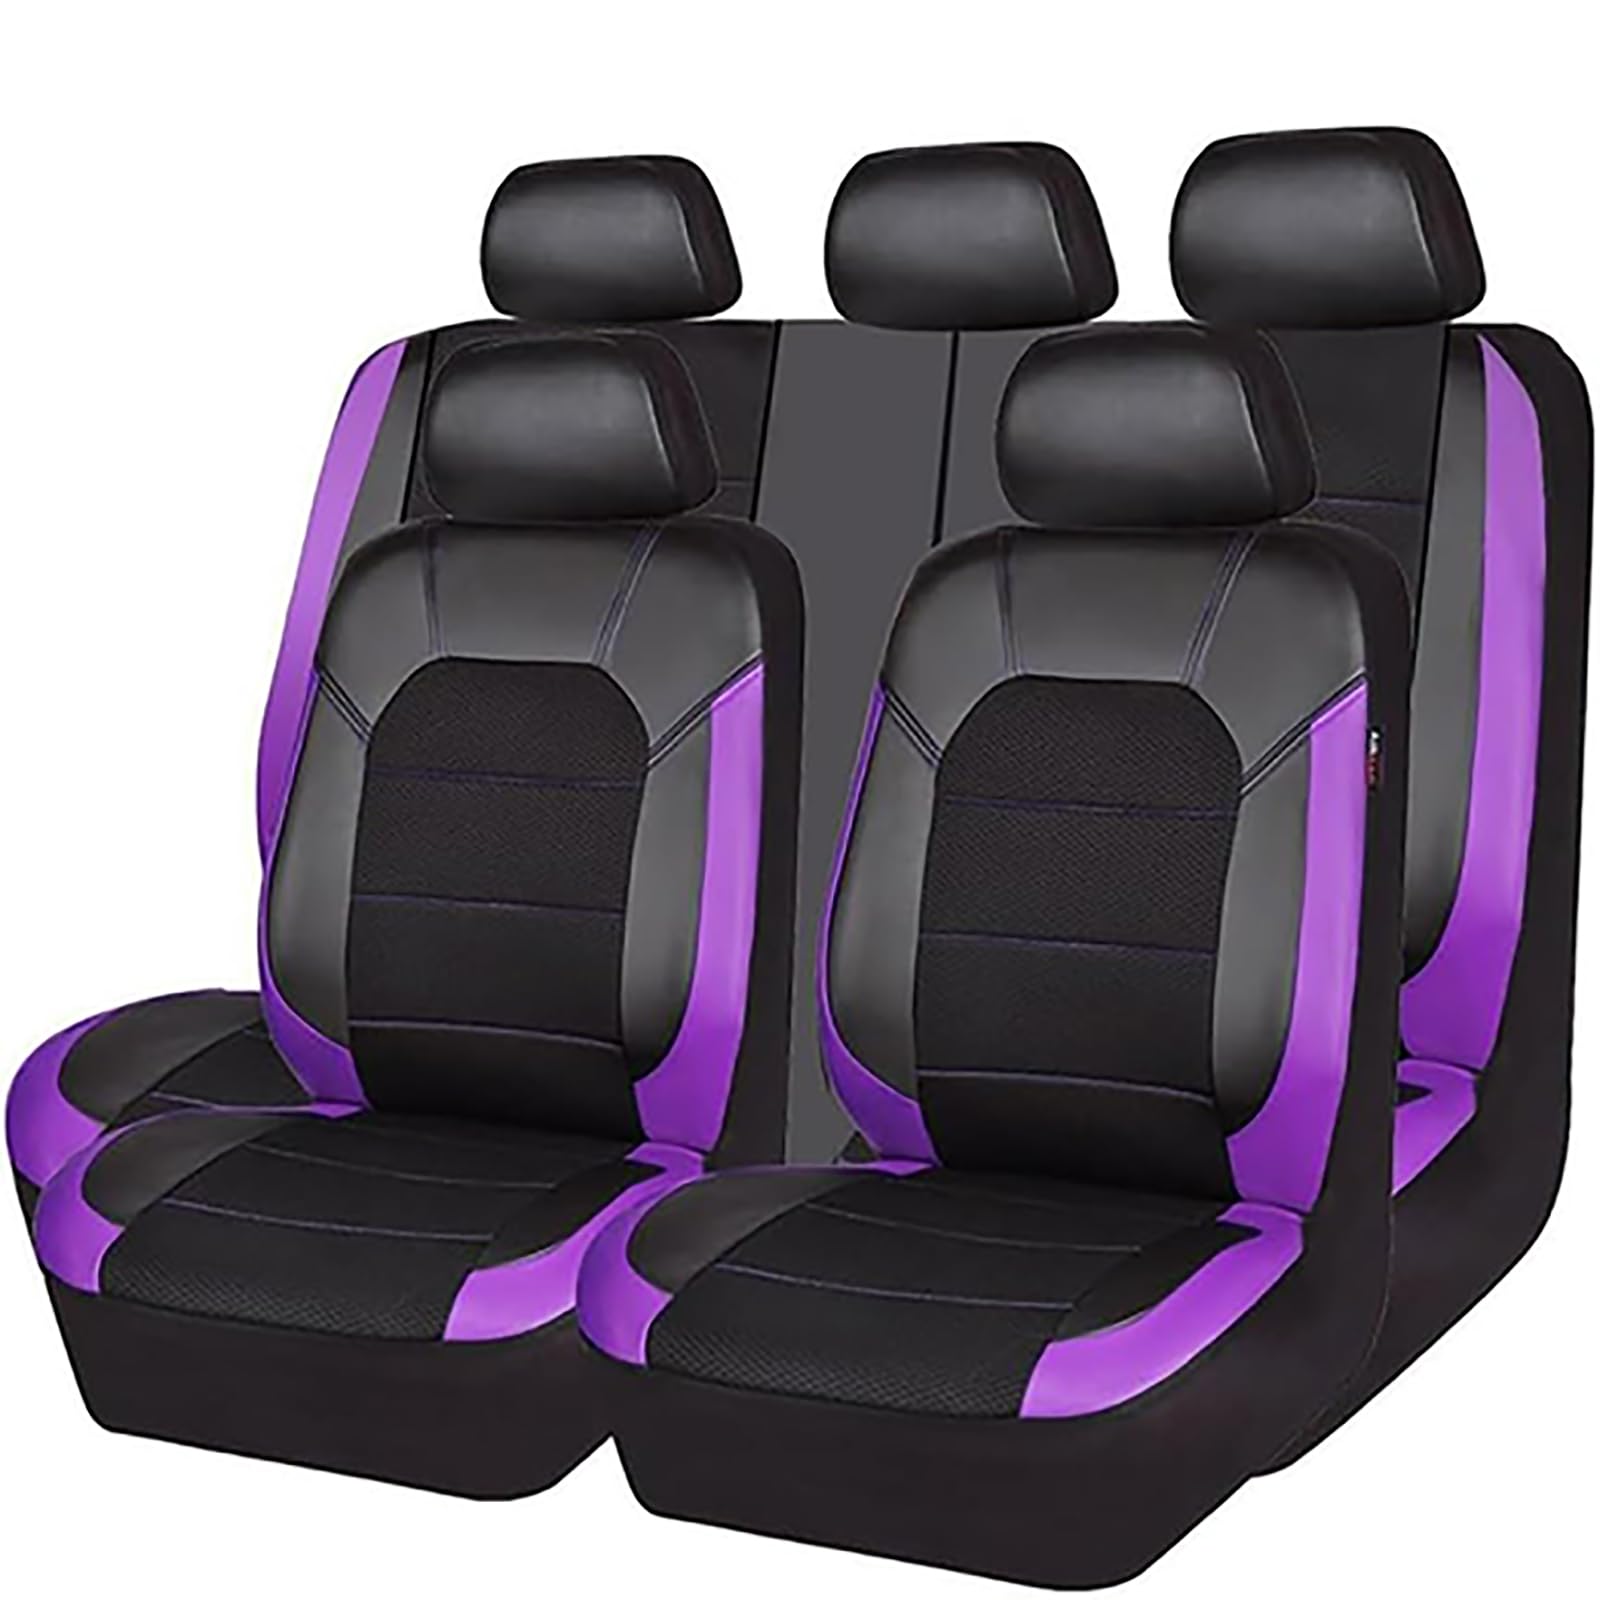 EYHQKRTR Auto Leder Sitzkissen Für Suzuki S-cross Scross 2017-2022, 5 Sitzer Full Set SitzbezüGe Schonbezug Vorne Rückbank Sitzschutz Compatible Airbag Innenraum Zubehör,E/Purple von EYHQKRTR